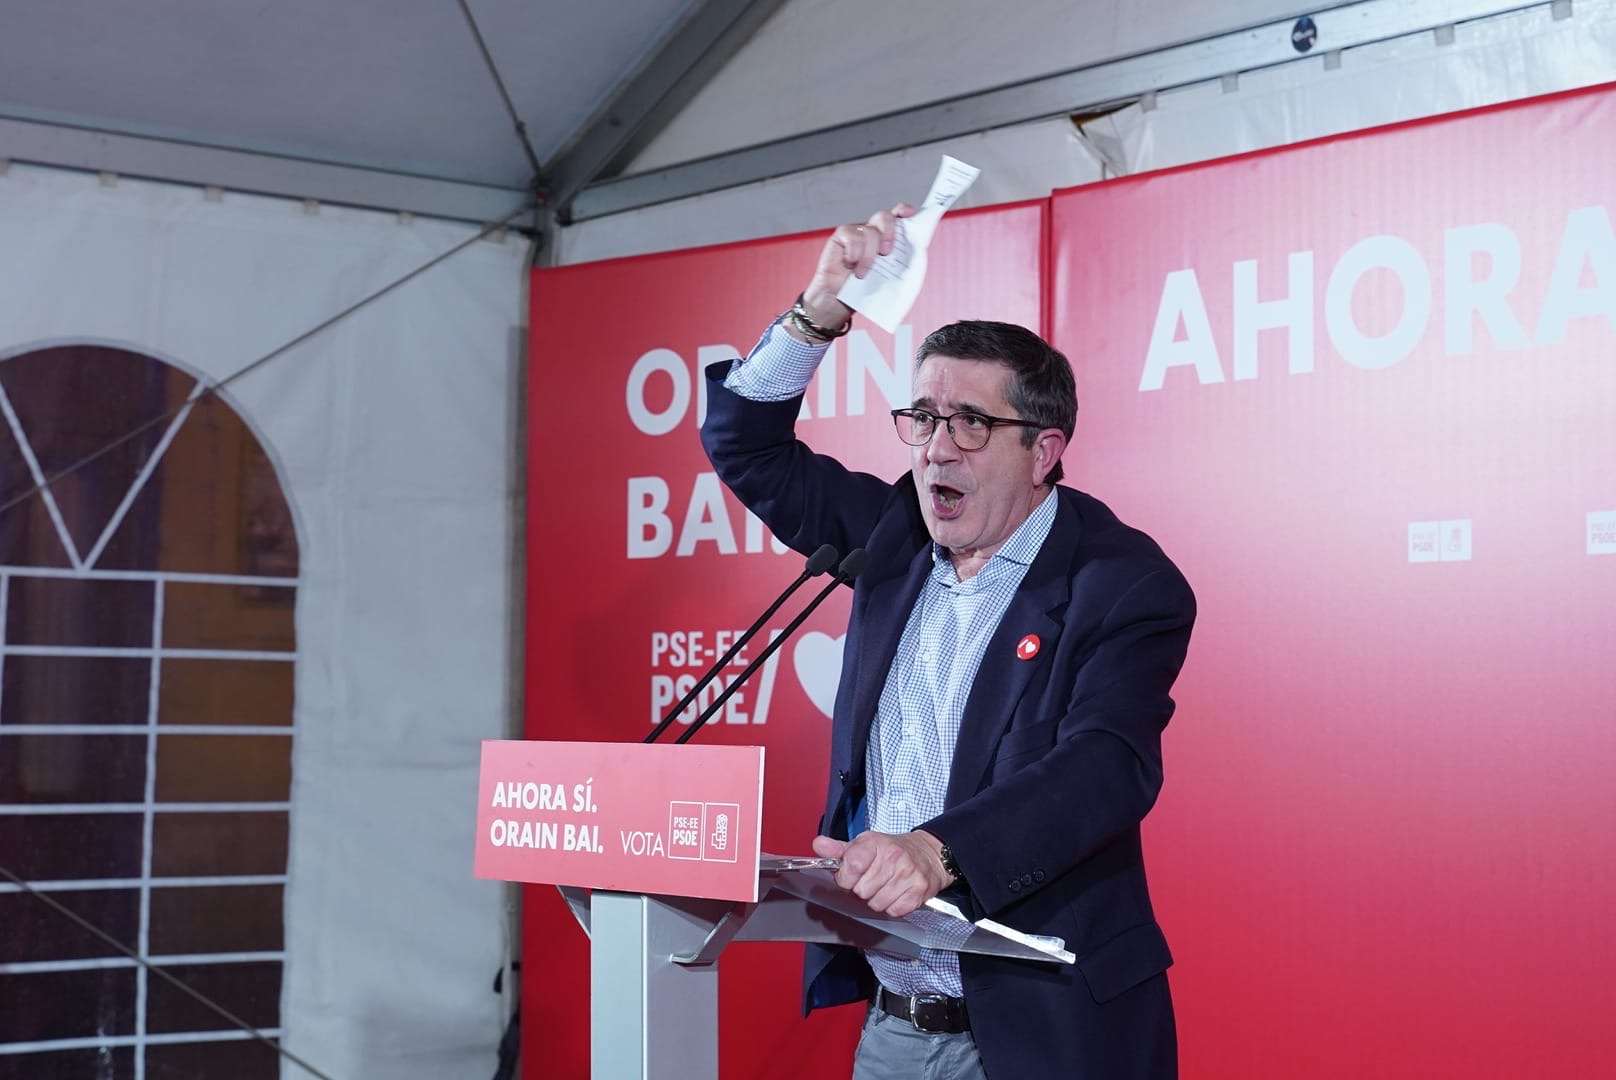 Patxi López cierre campaña Bilbao. El voto al PSE-EE es nuestra máquina para parar al fascismo